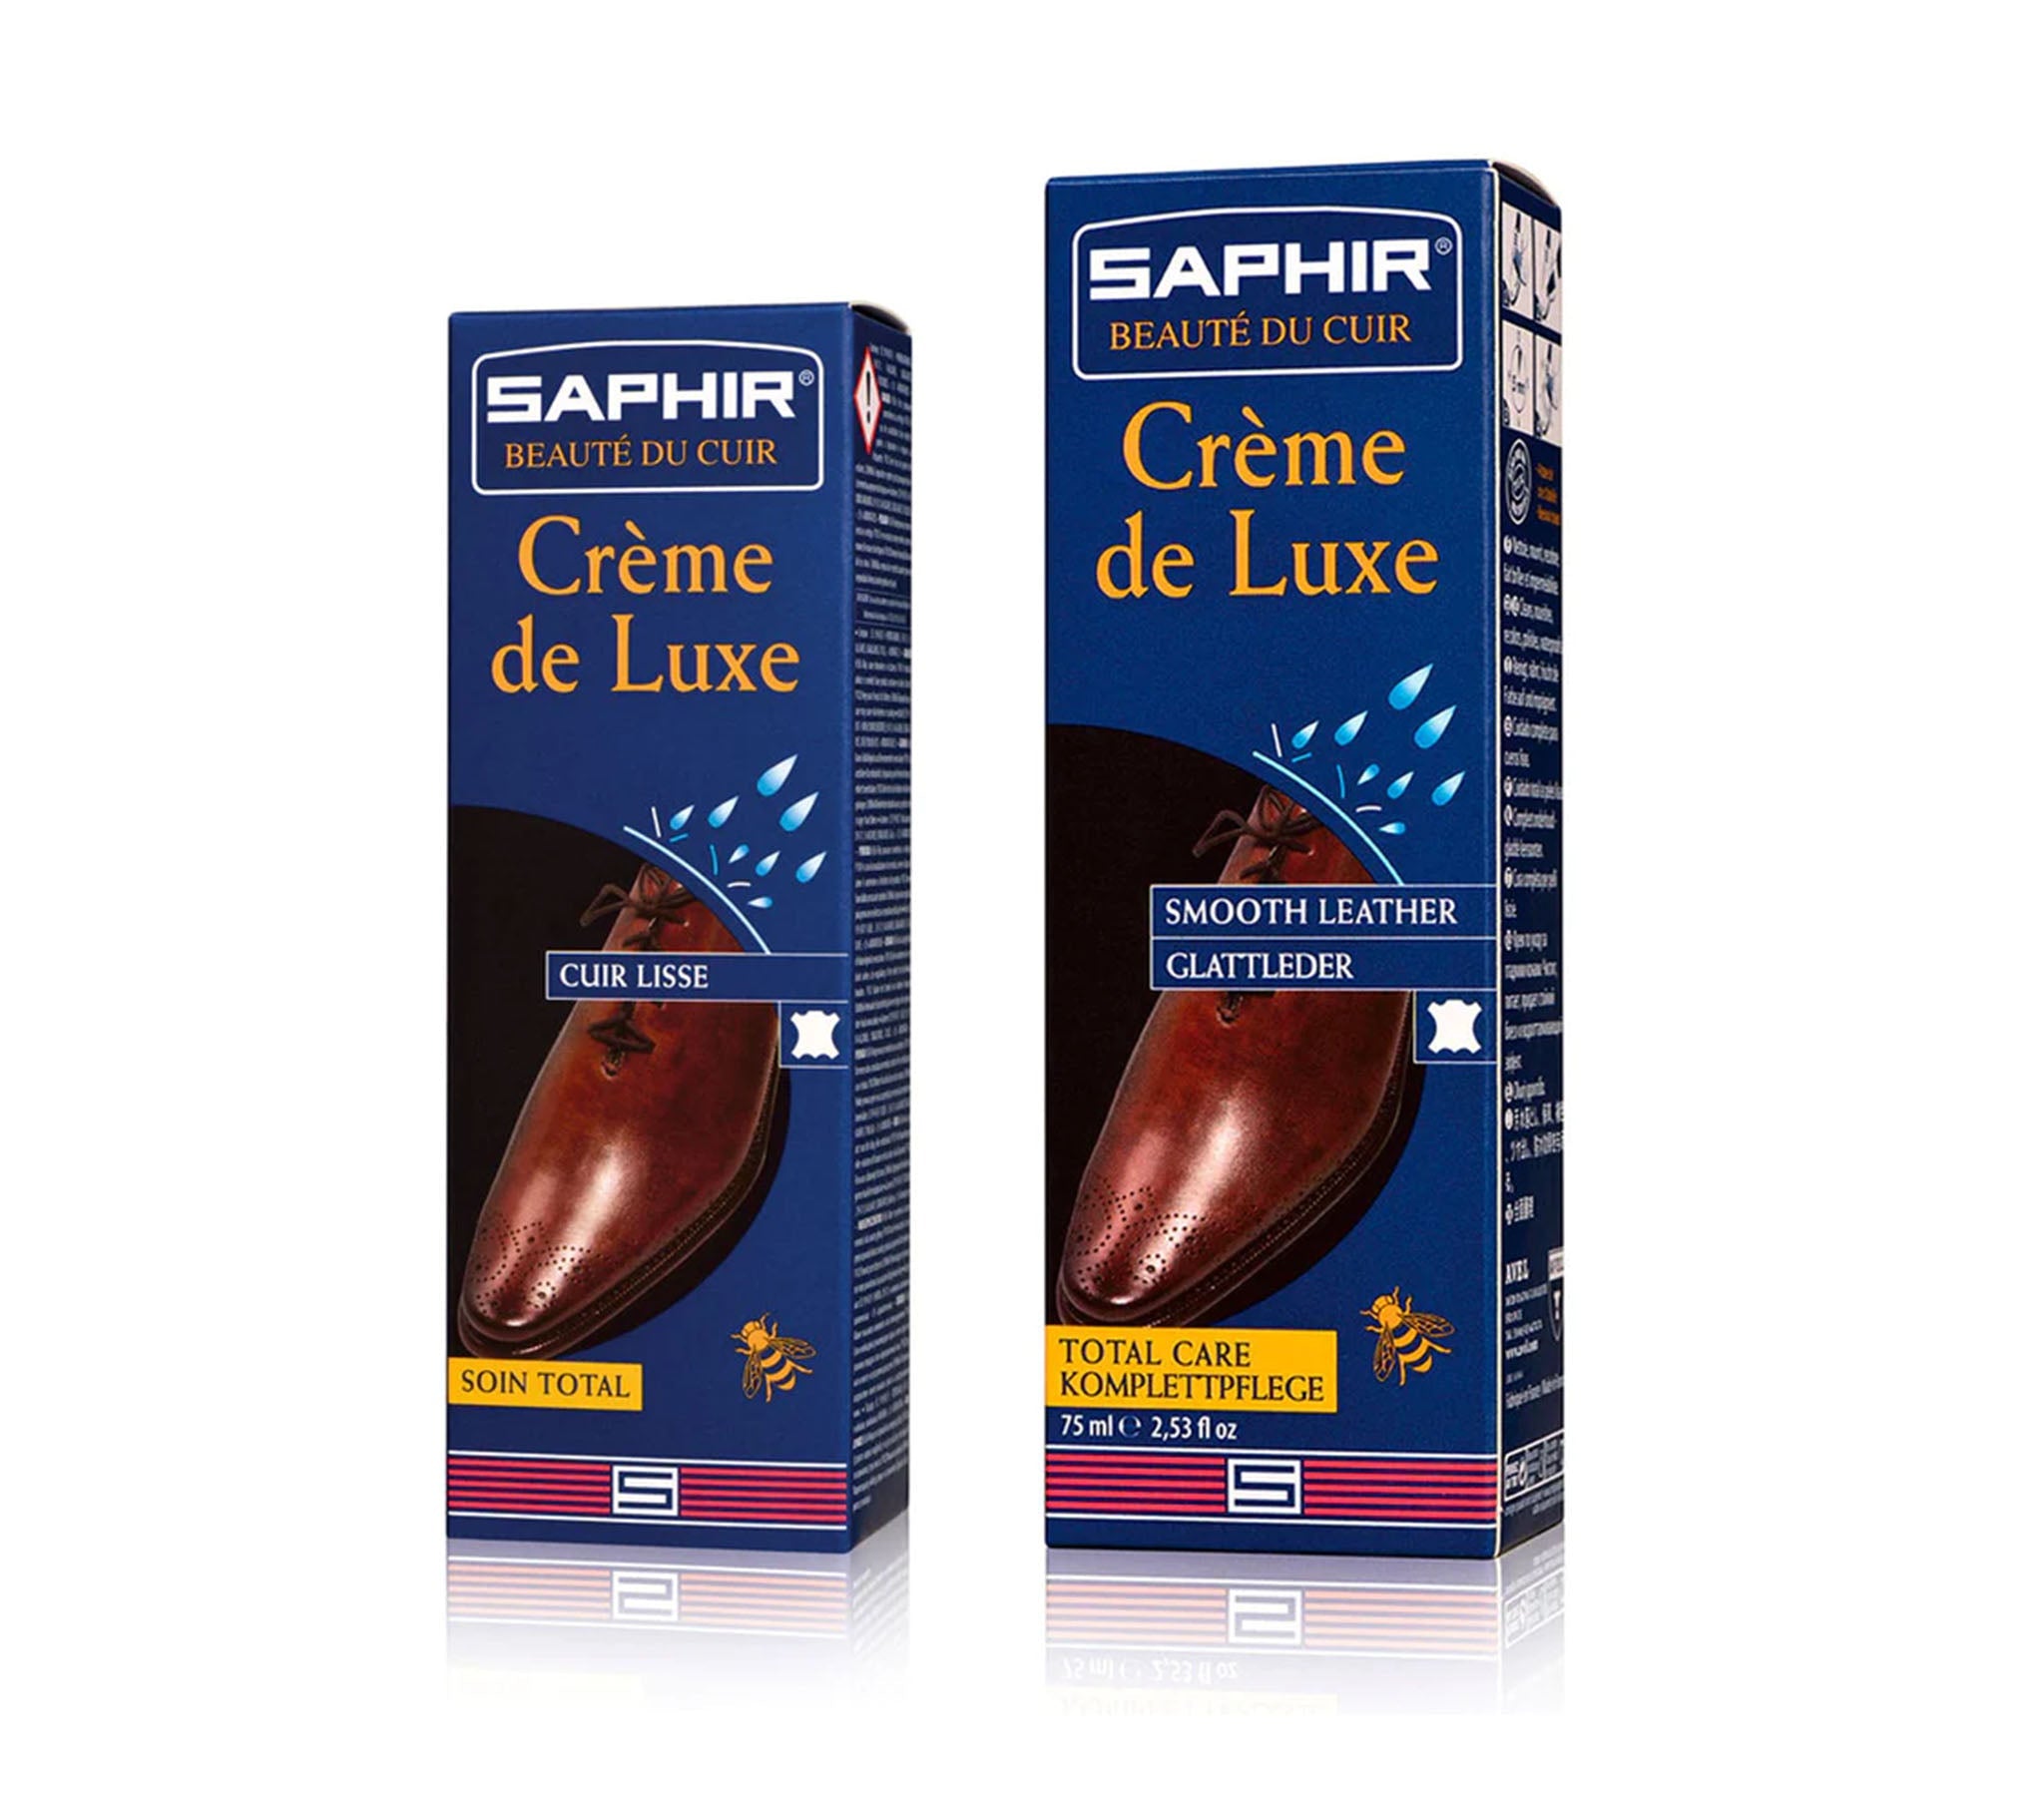 Saphir Beaute du Cuir - Creme de Luxe